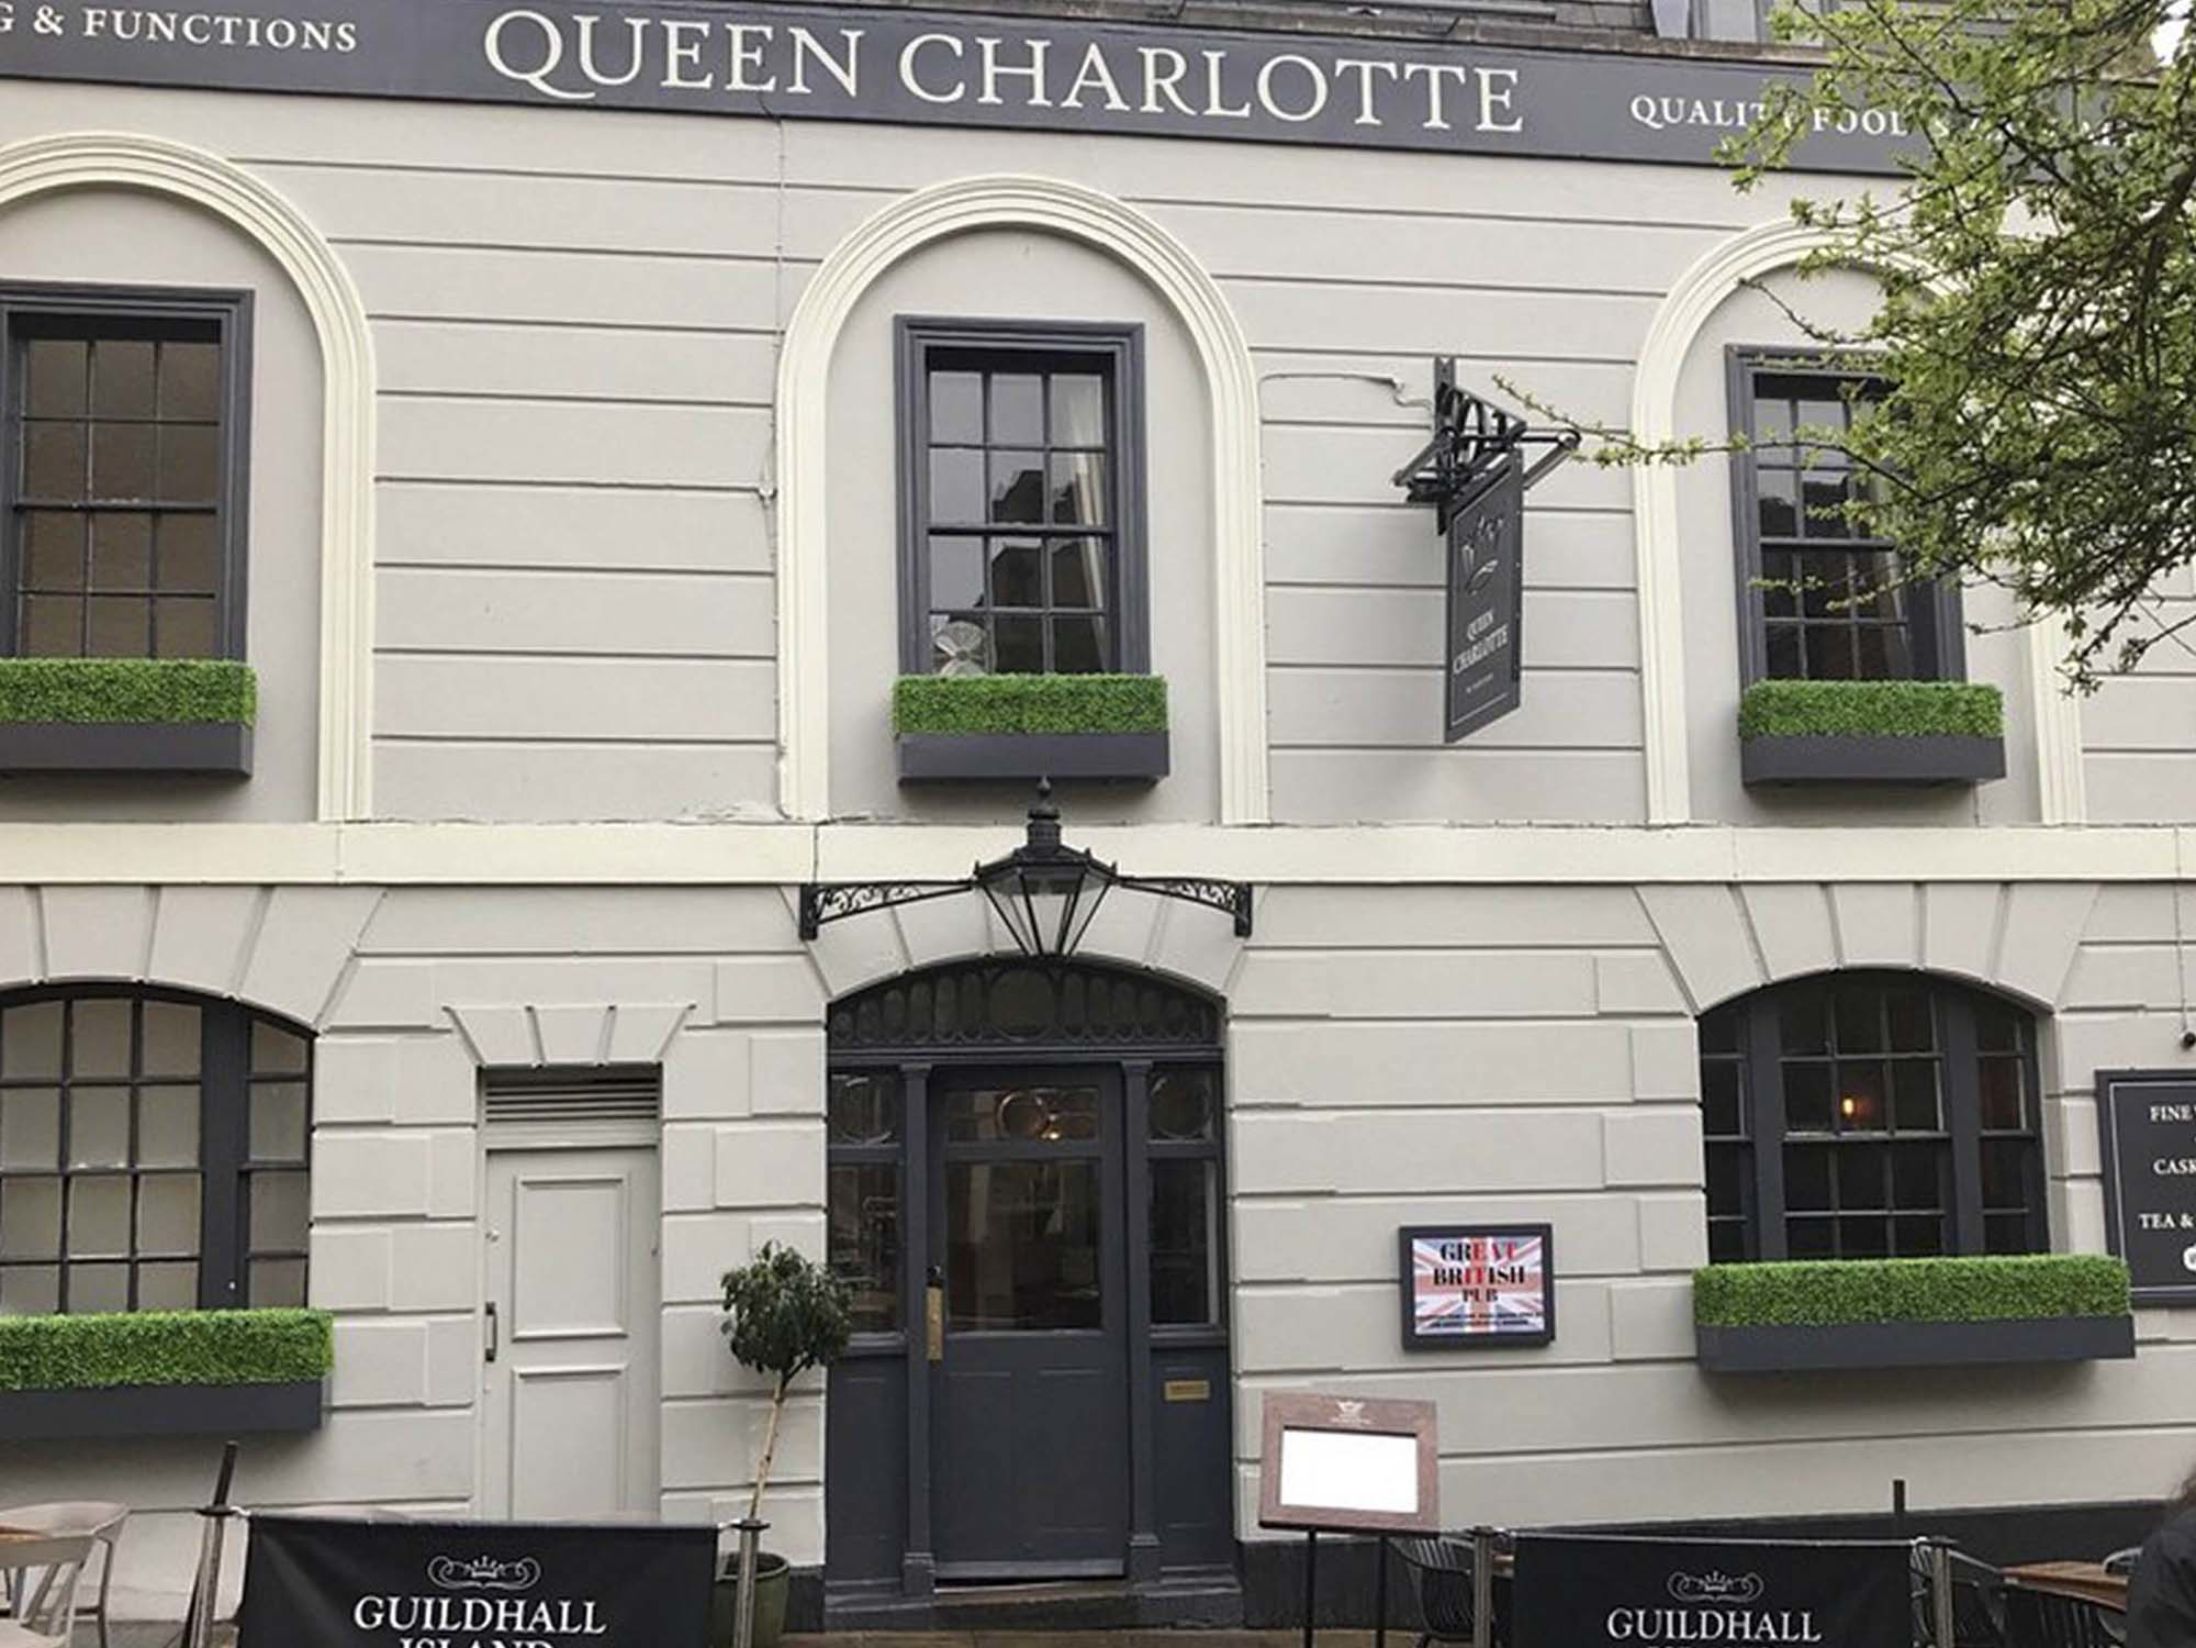 Best Pubs in Windsor - The Queen Charlotte